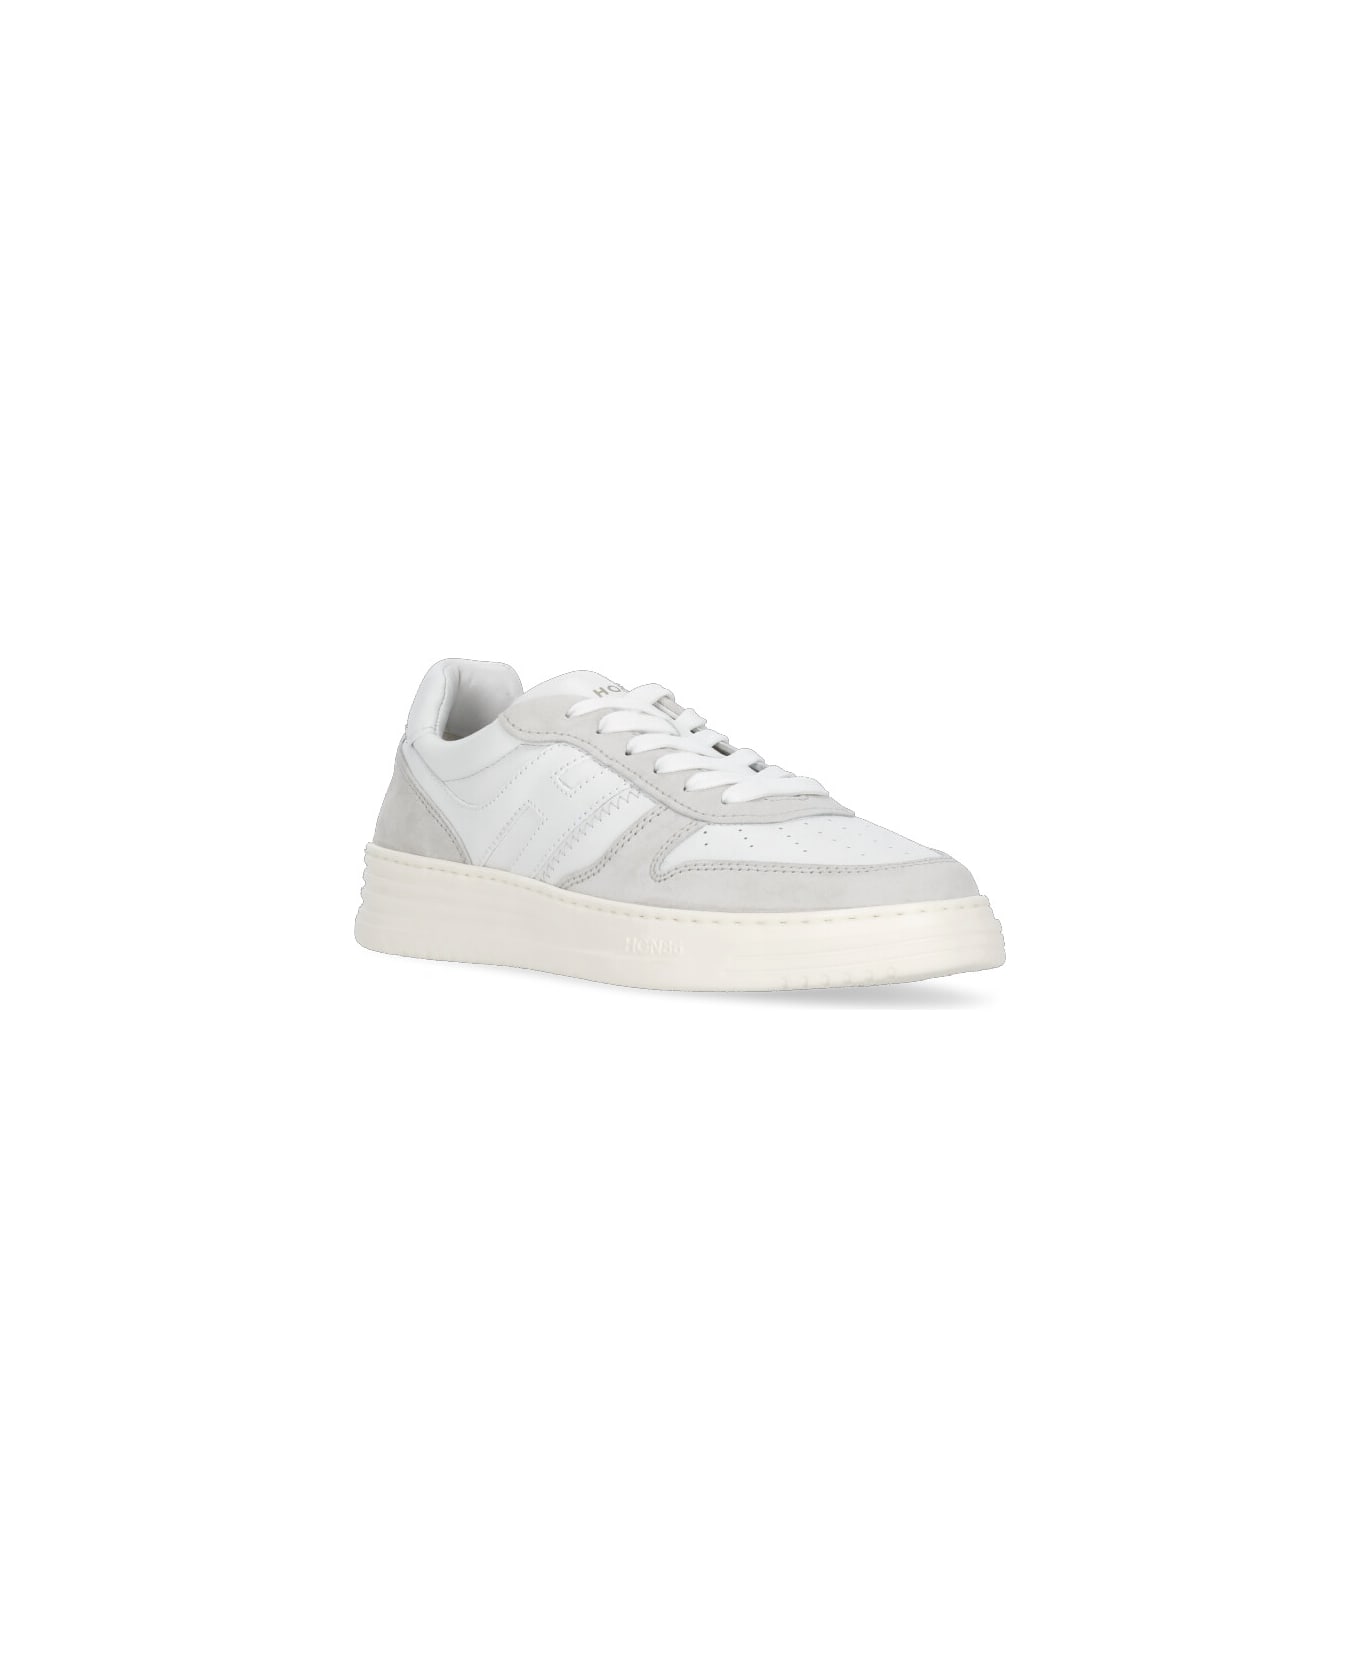 Hogan H630 Sneakers - White/beige